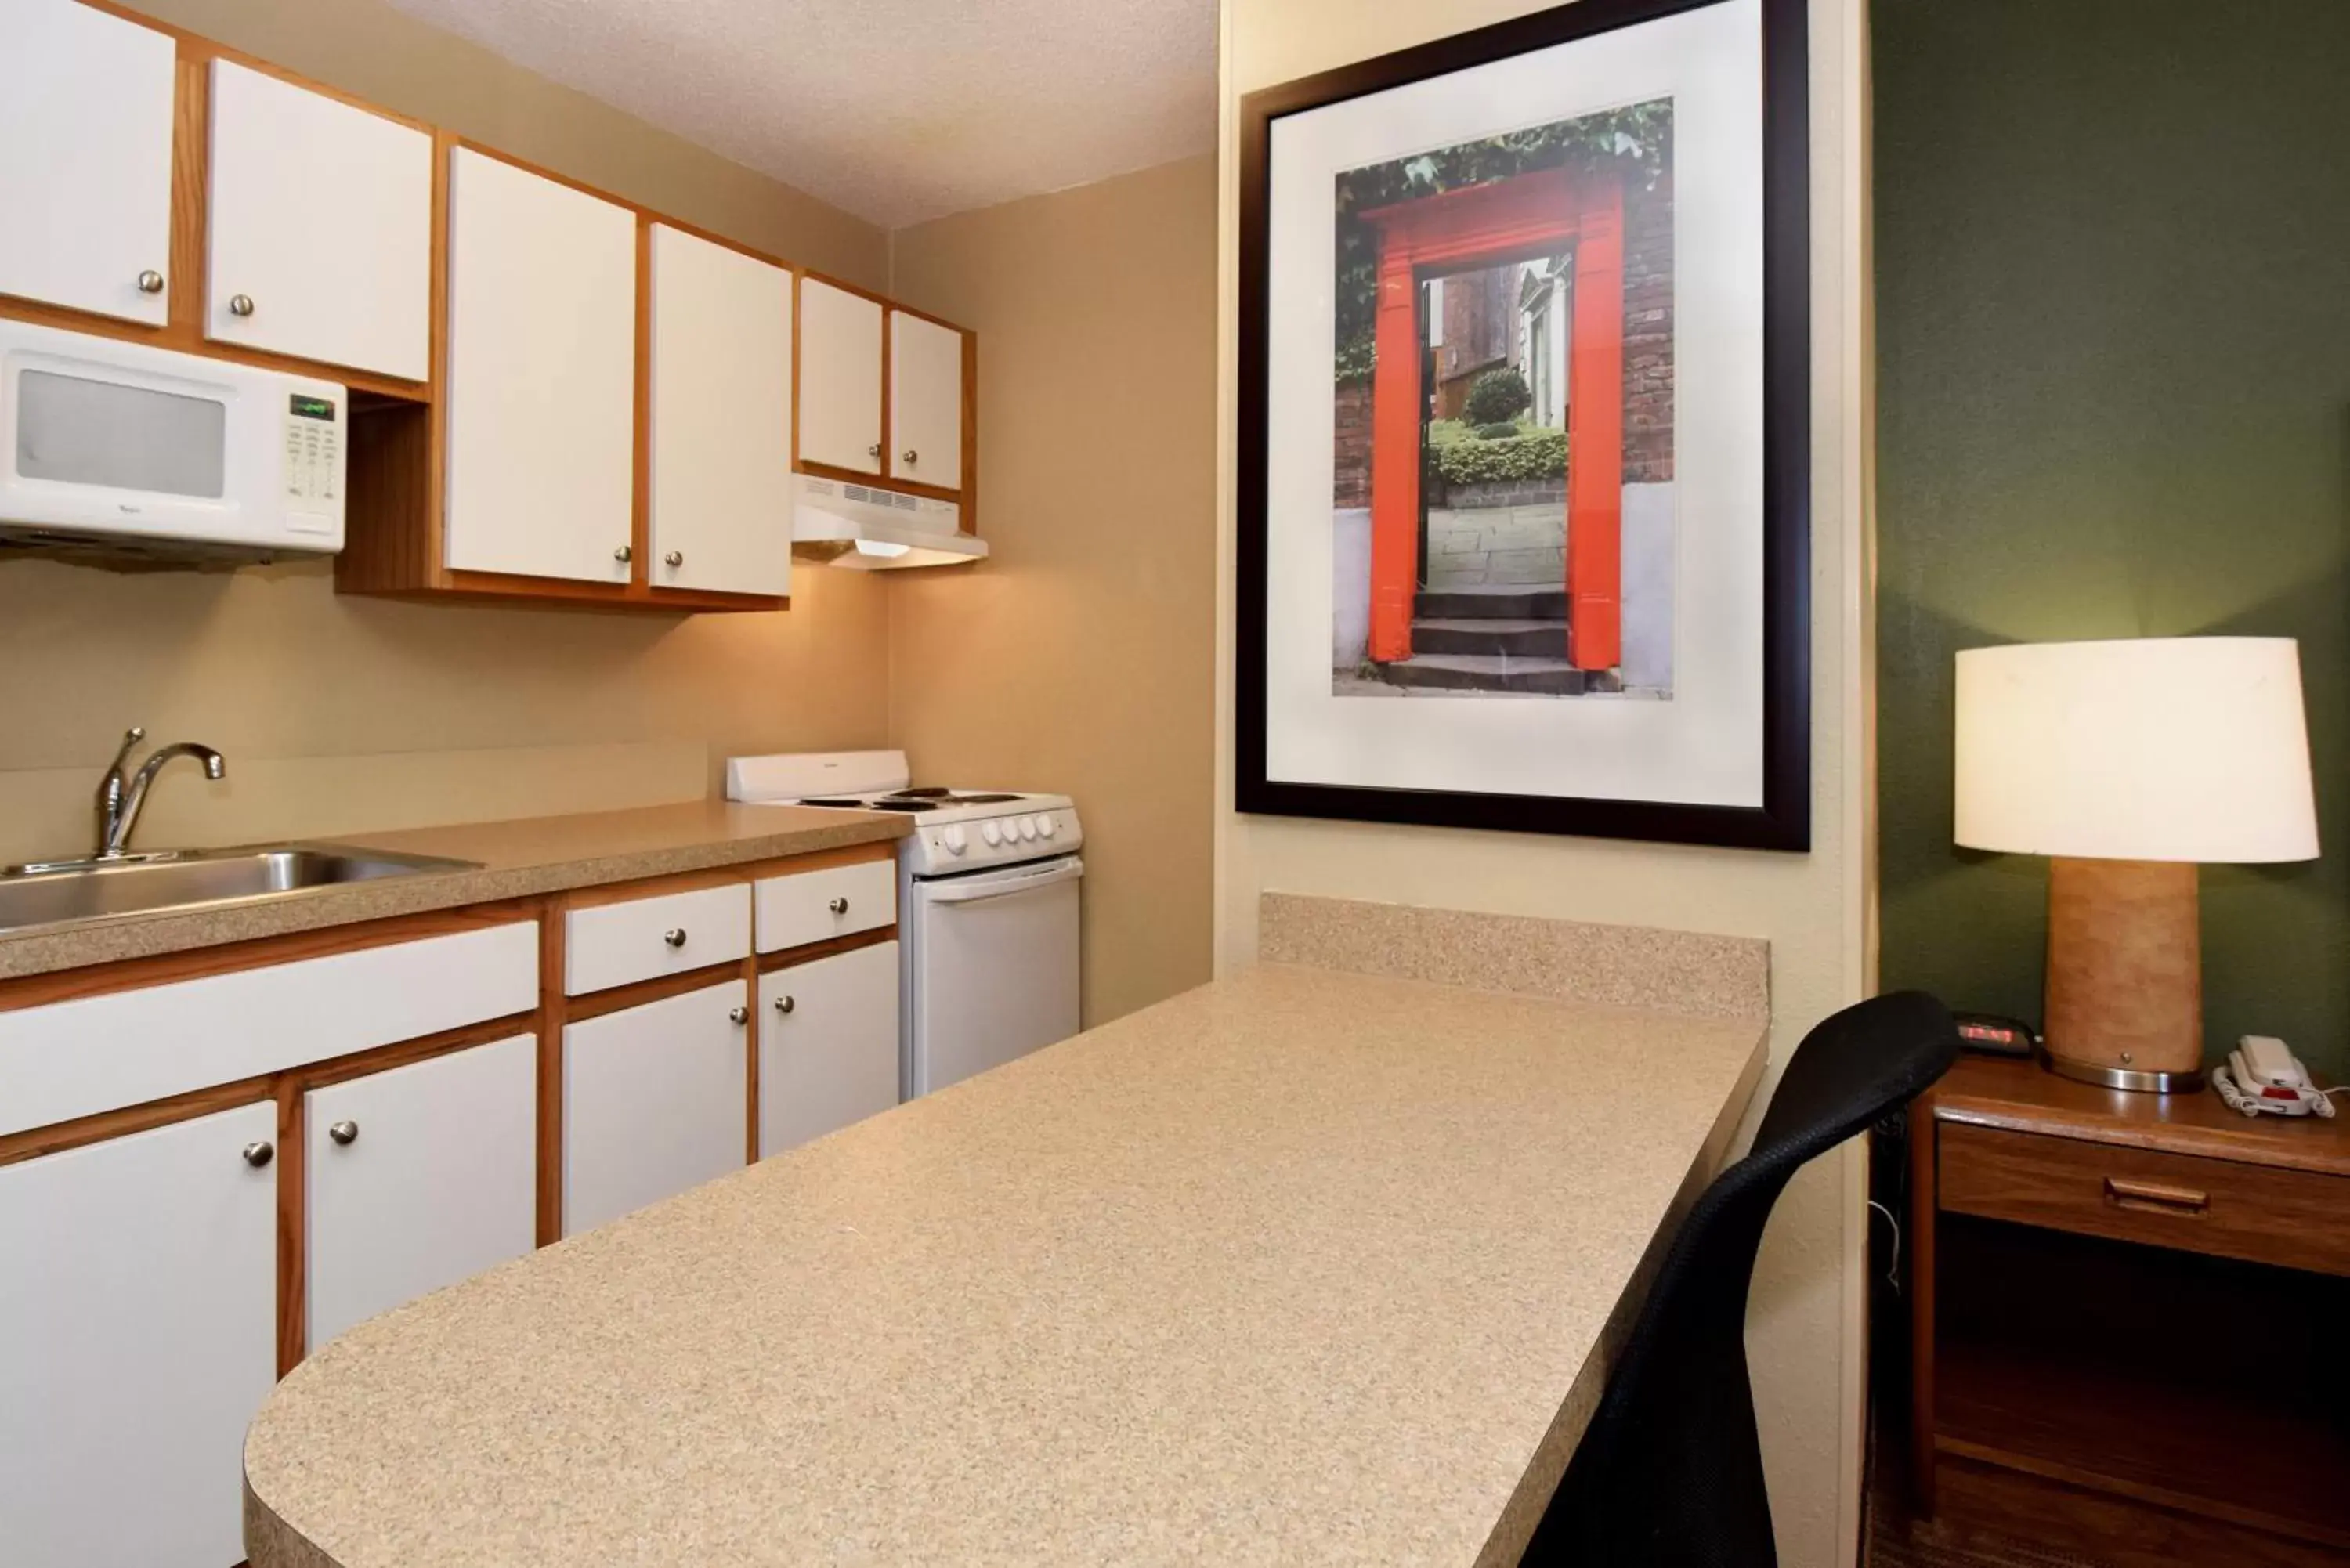 Kitchen or kitchenette, Kitchen/Kitchenette in Extended Stay America Suites - Des Moines - West Des Moines